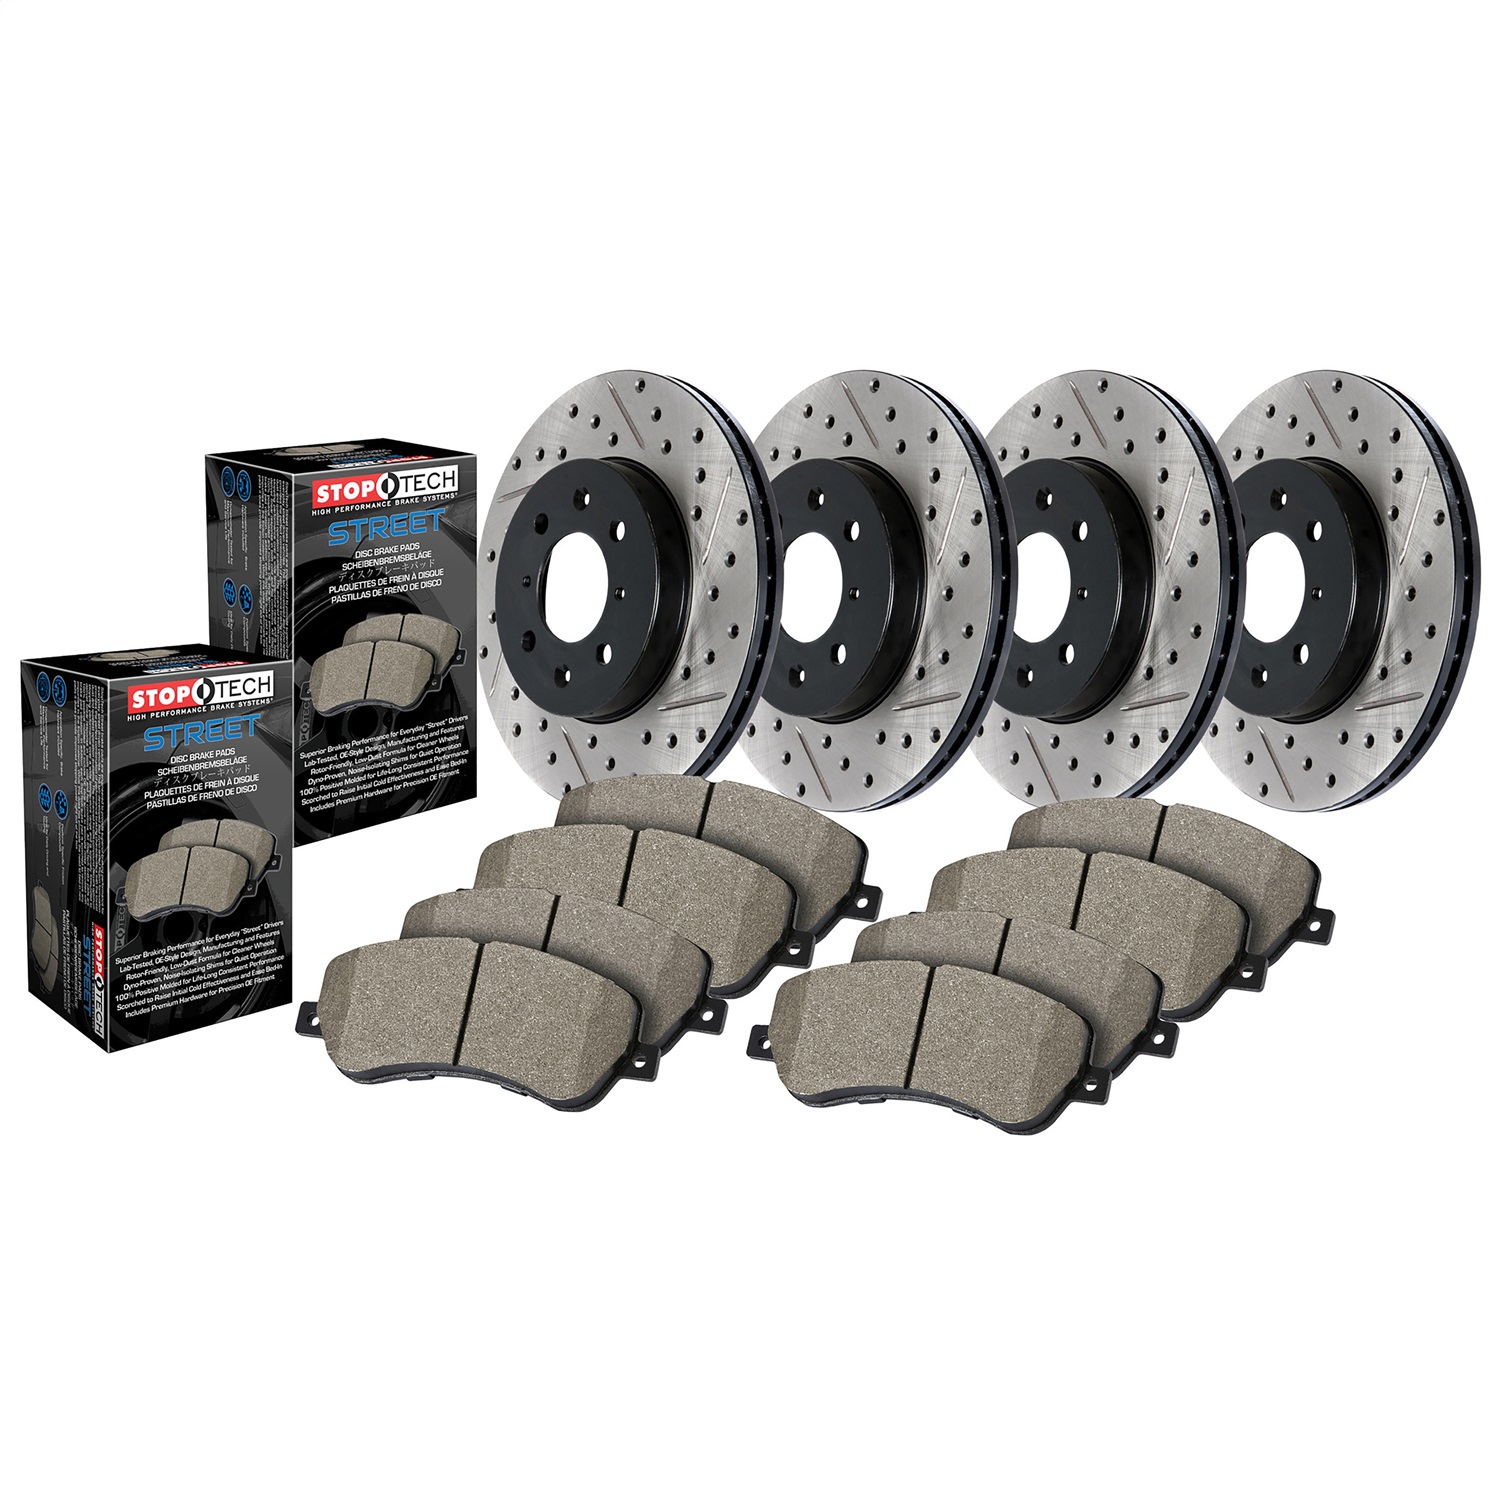 StopTech 935.47018 Disc Brake Upgrade Kit